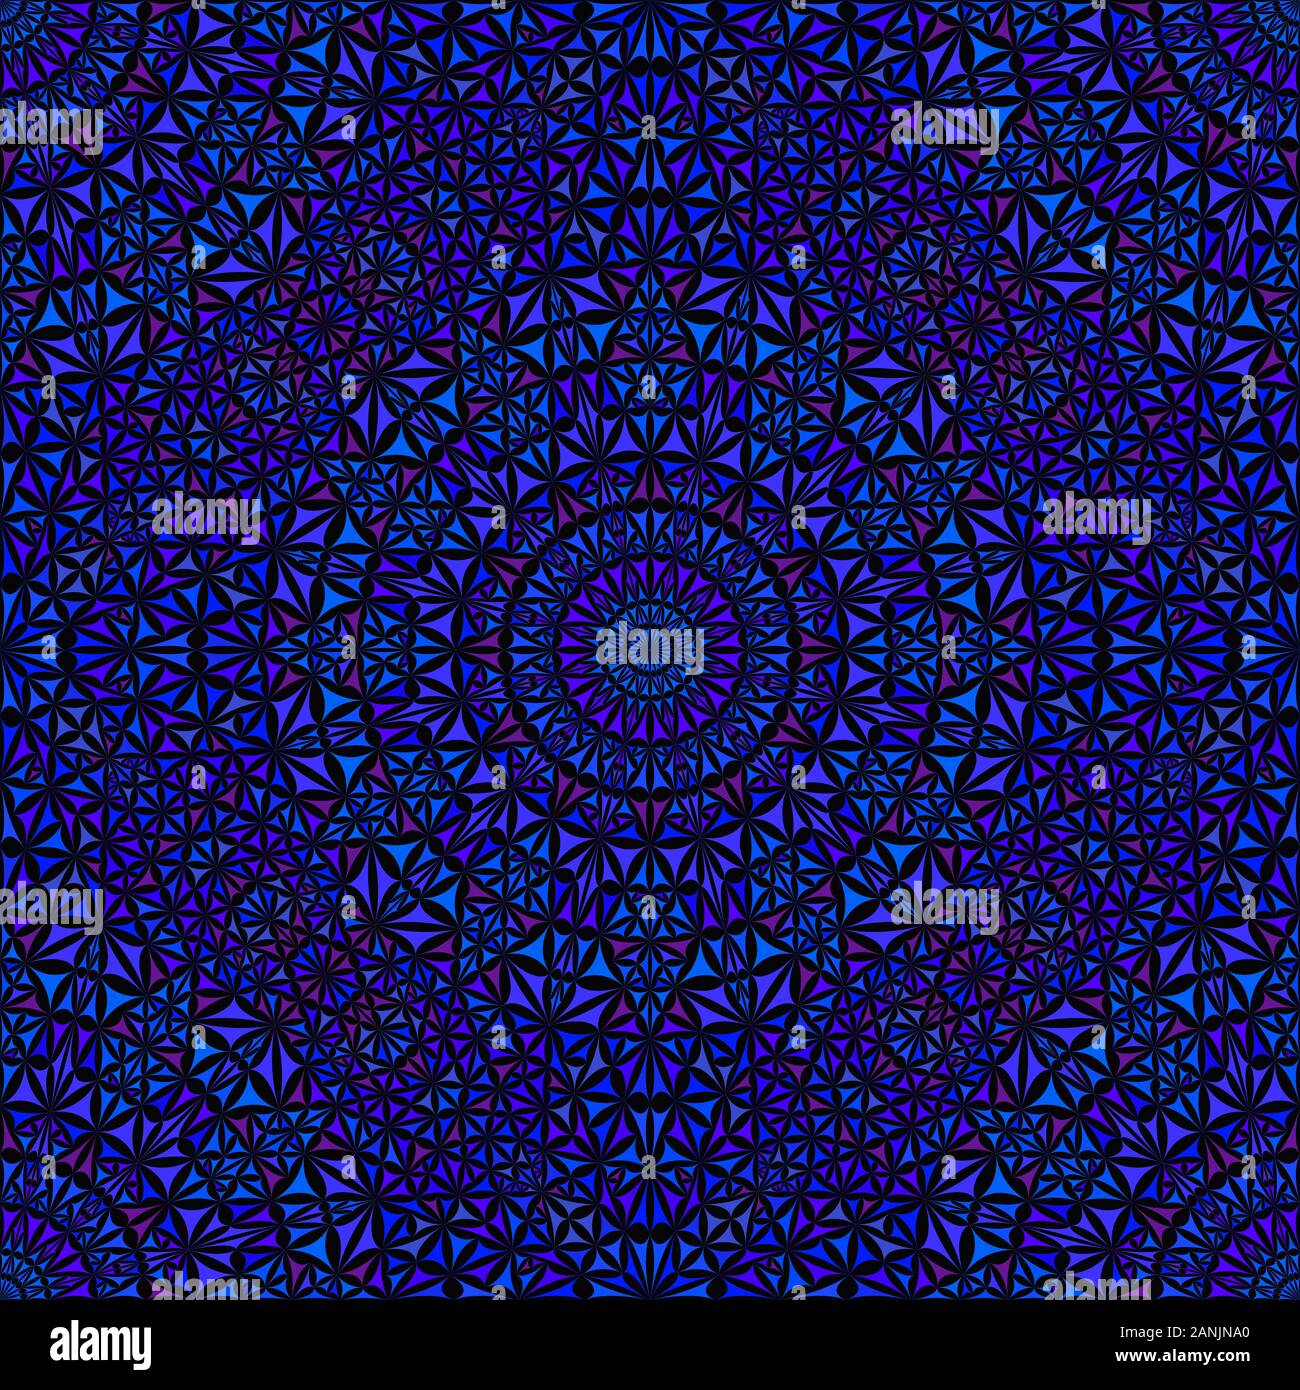 Orientalische nahtlose böhmischen Mandala Muster Hintergrund - geometrische abstrakte Kaleidoskop Vektorgrafiken grafik design Stock Vektor